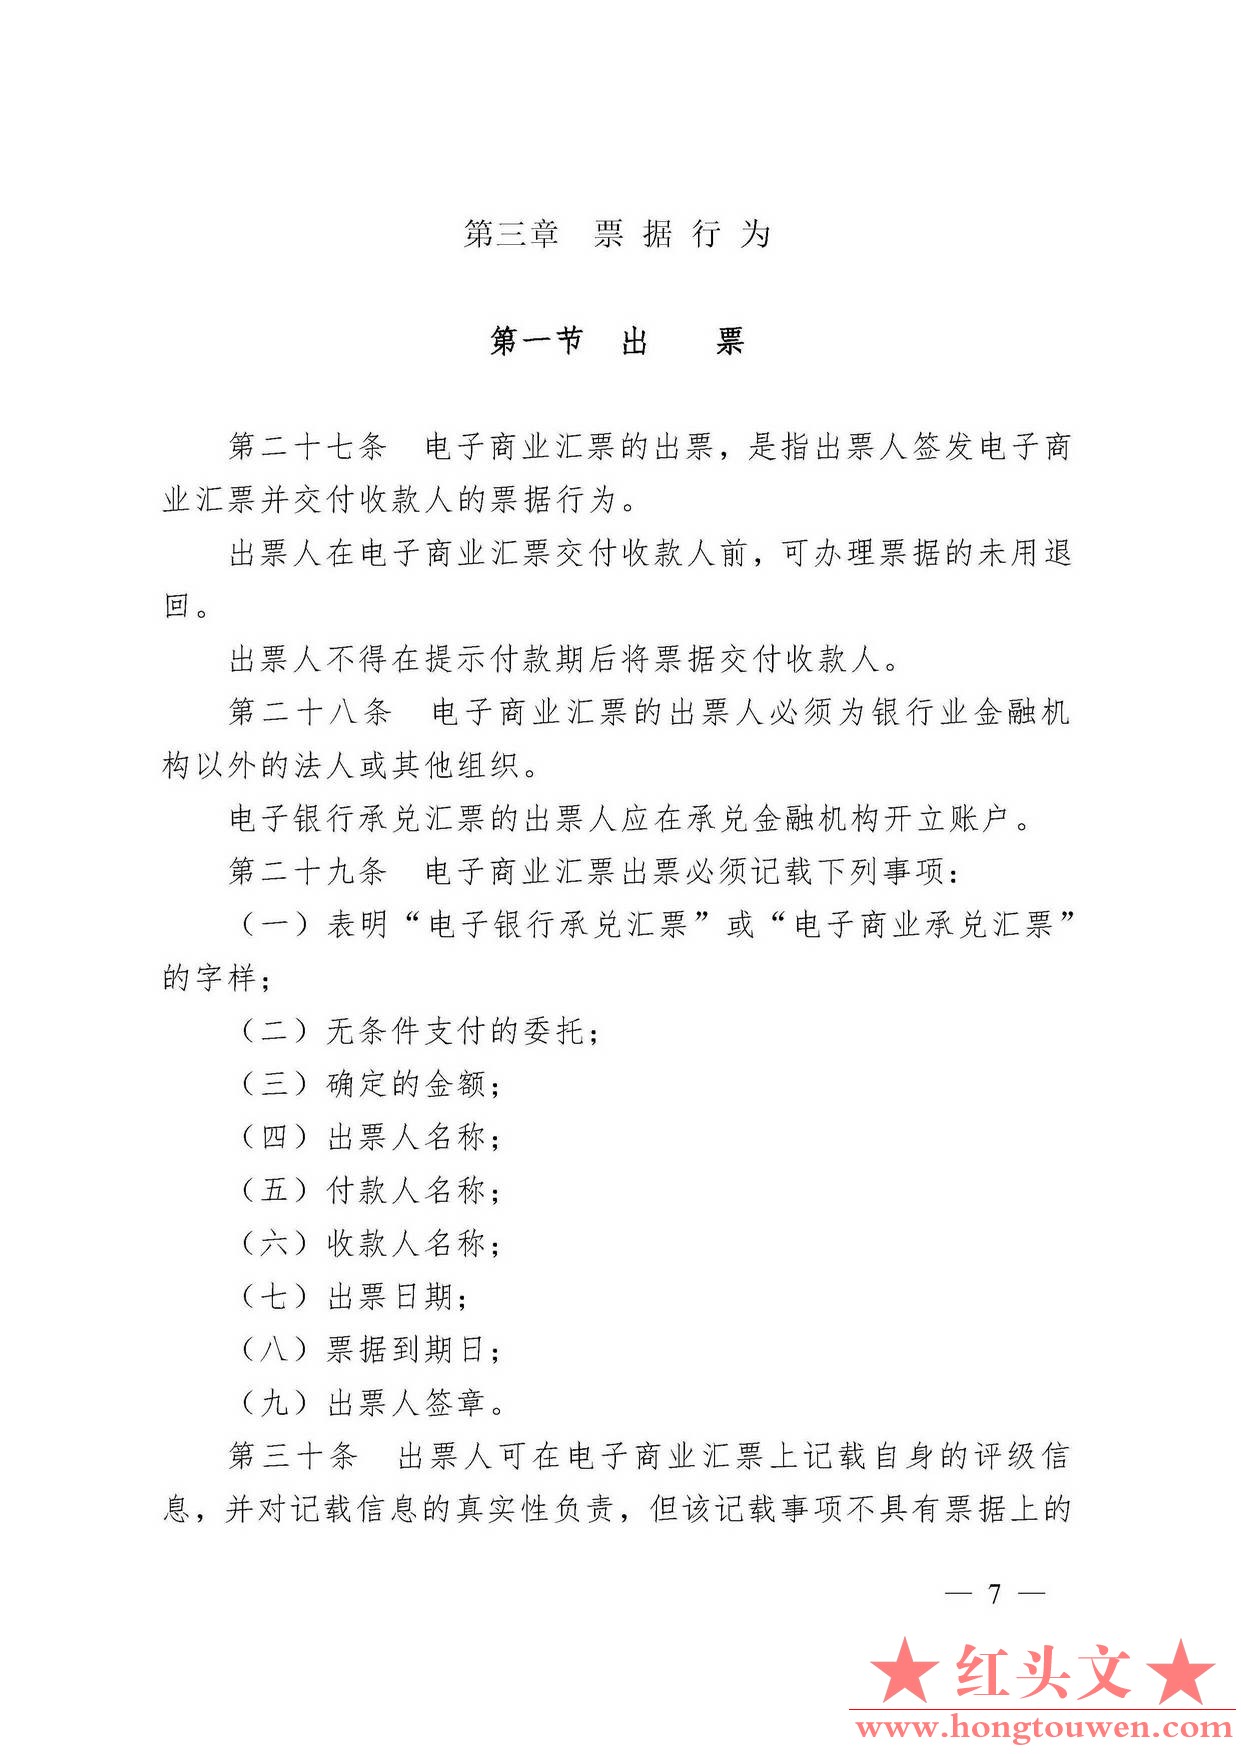 中国人民银行令[2009]2号-电子商业汇票管理办法_页面_07.jpg